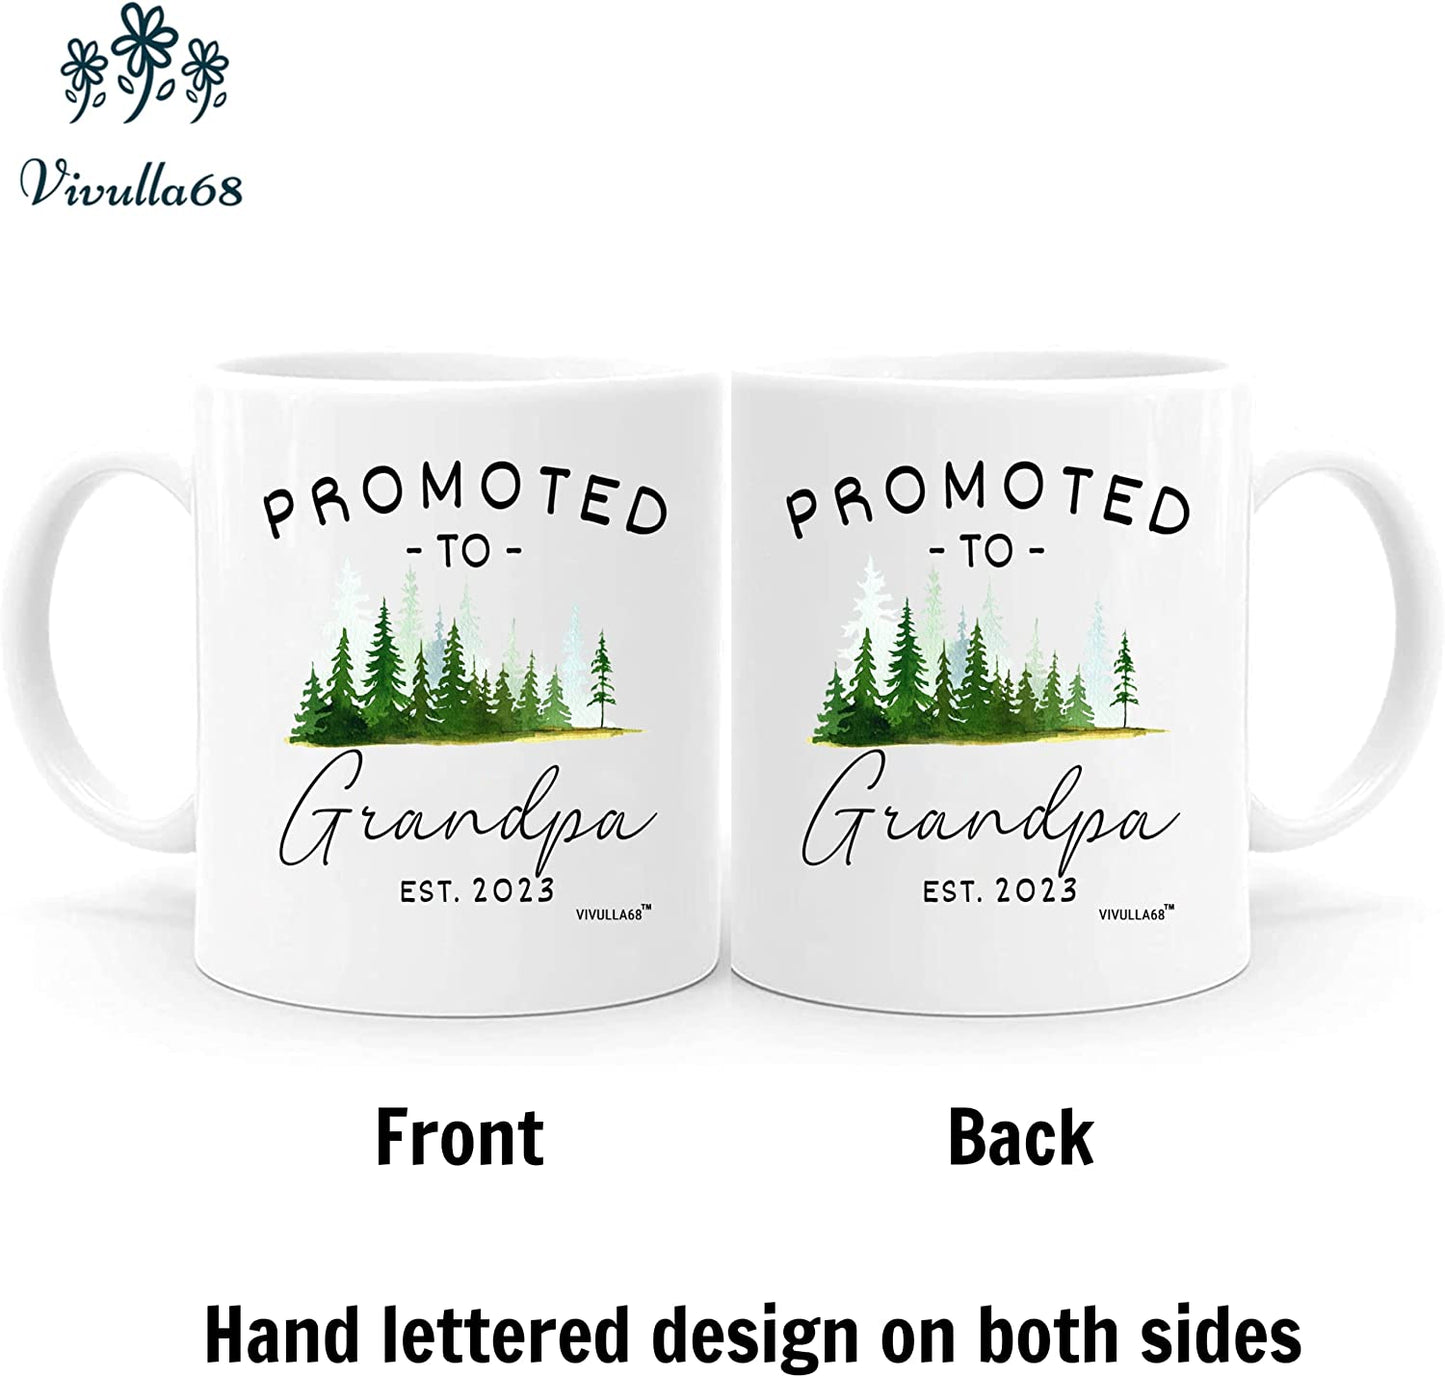 Vivulla68 Promoted To Grandparents Grandma And Grandpa 2023 Mugs, Pregnancy Announcement For Grandparents Mug Set, Grandma And Grandpa Announcement Gifts, Grandparents Baby Announcement Gifts